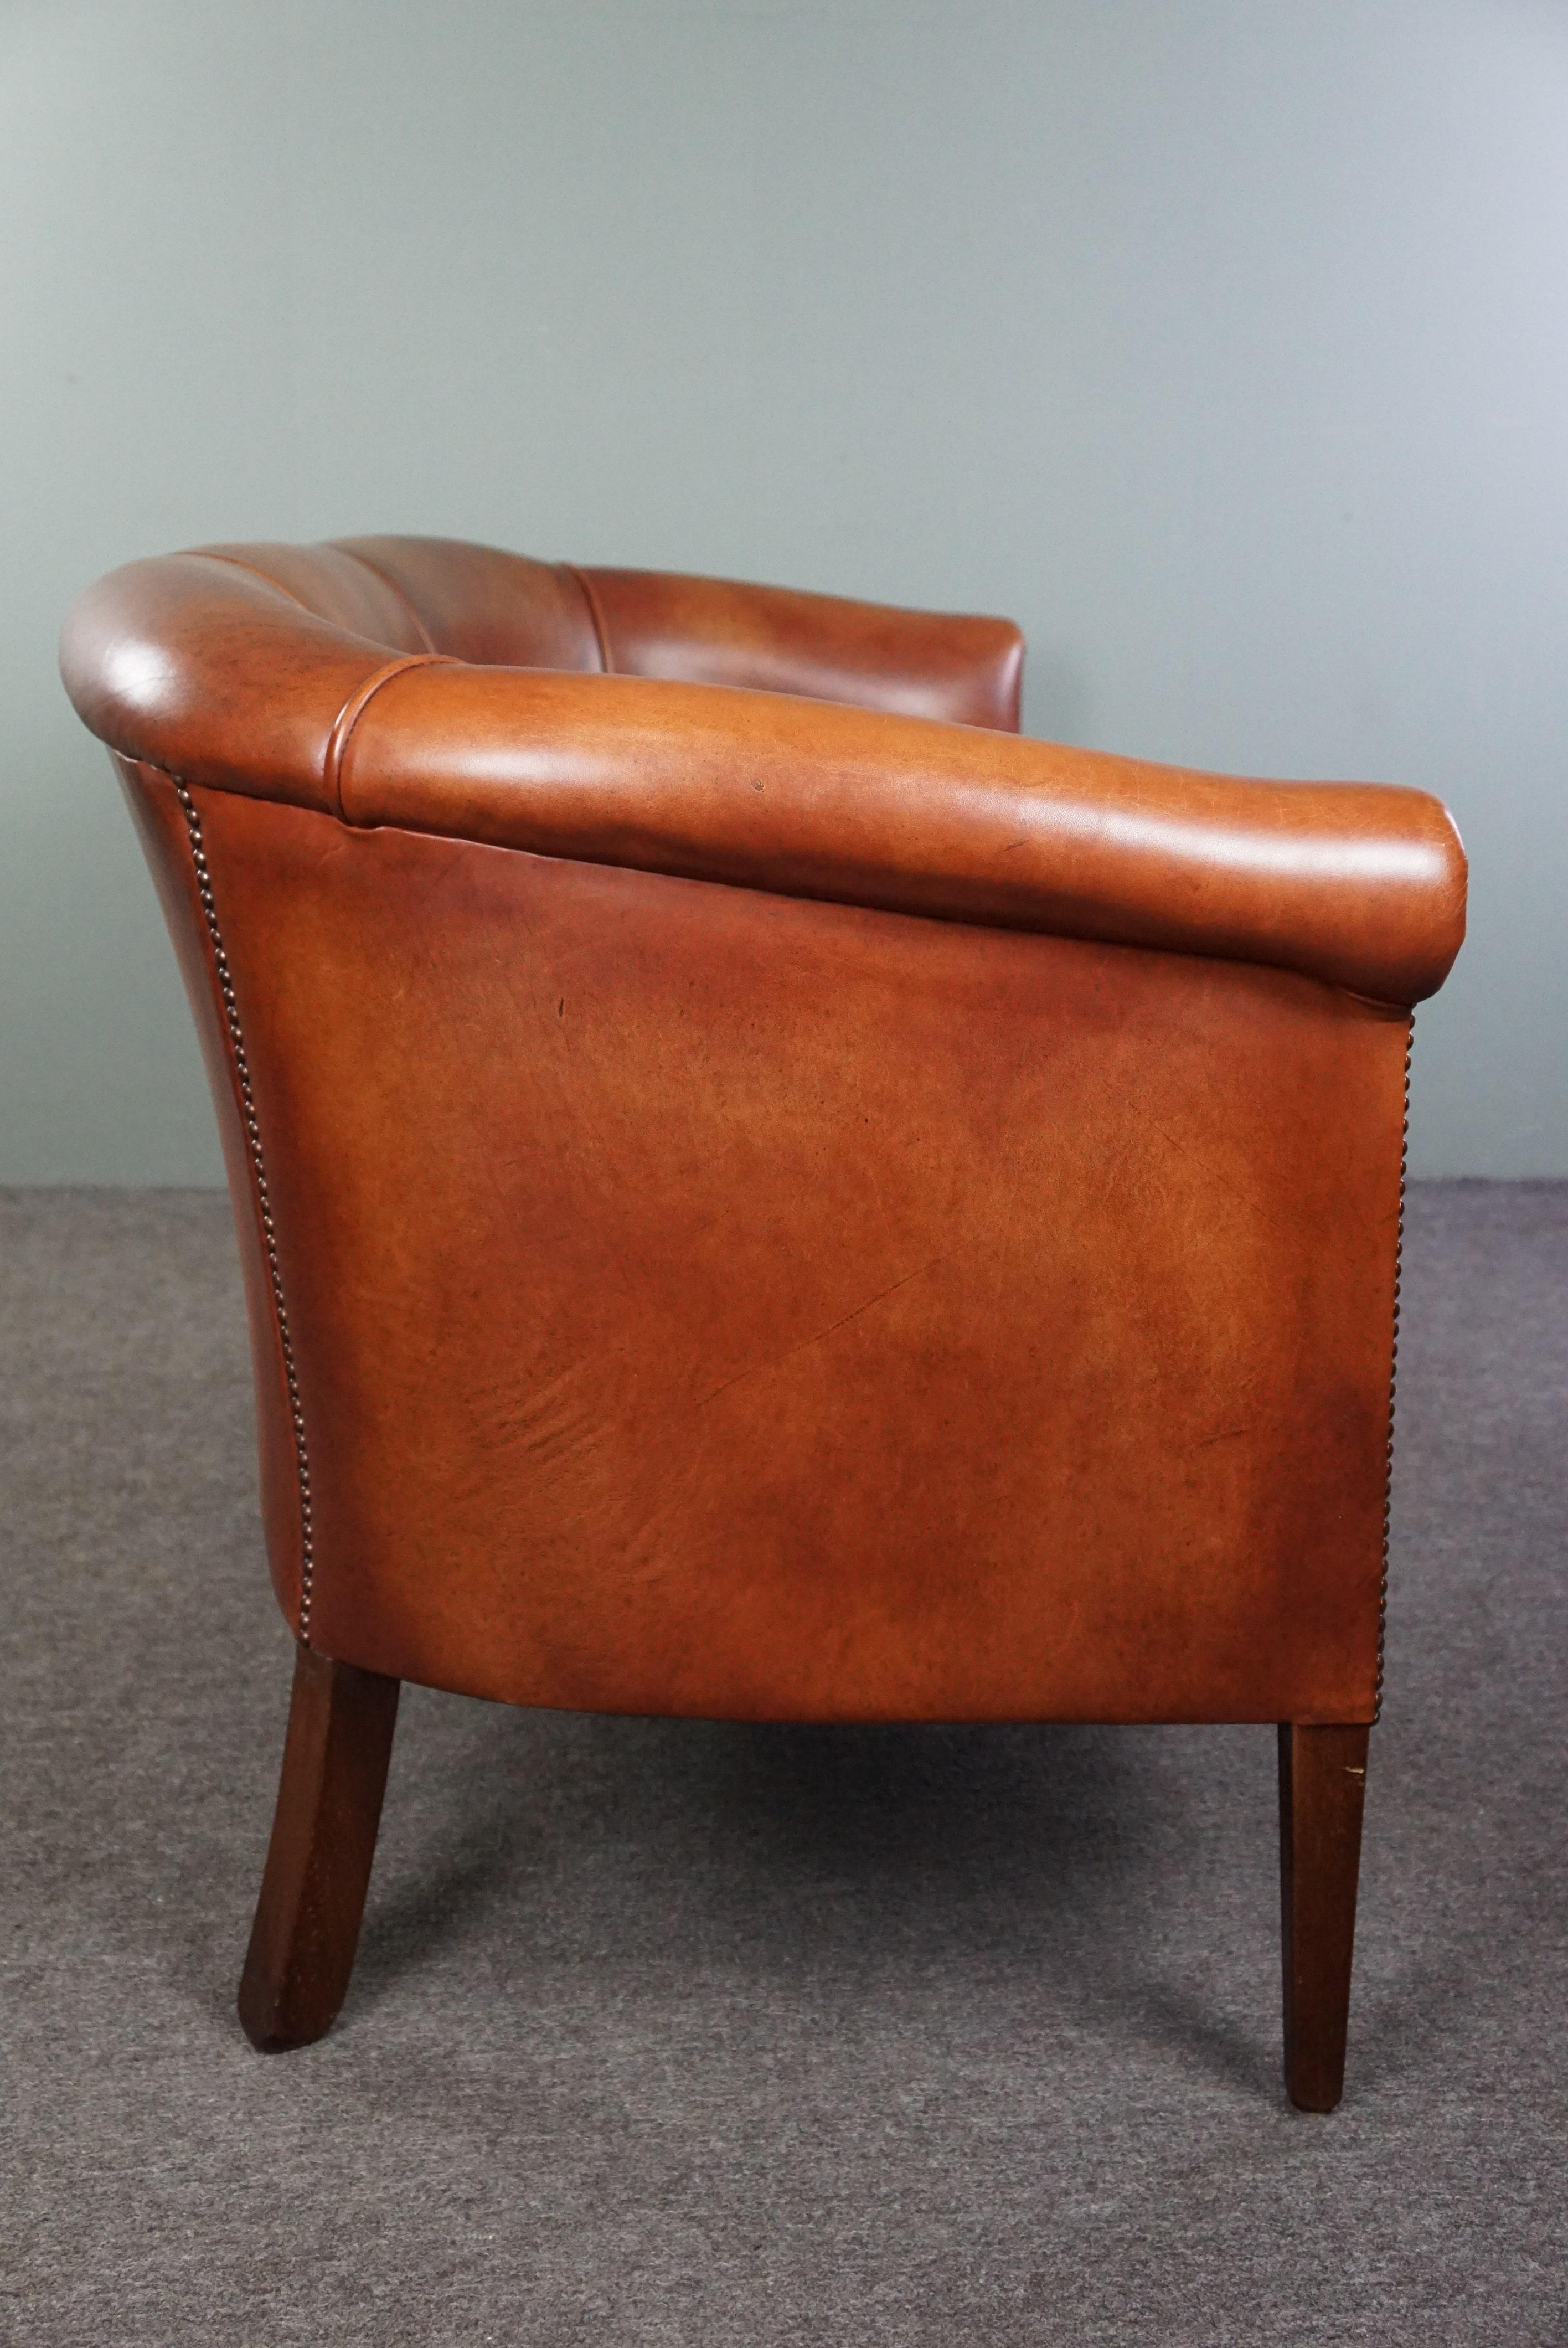 Angeboten wird dieses schöne und hochwertige cognacfarbene Rindsleder 2,5-Sitzer Clubsofa. Dieses gut gepflegte 2,5-sitzige Clubsofa aus Rindsleder hat eine unglaublich attraktive Ausstrahlung und bietet einen guten Sitzkomfort. Das Sofa wird in